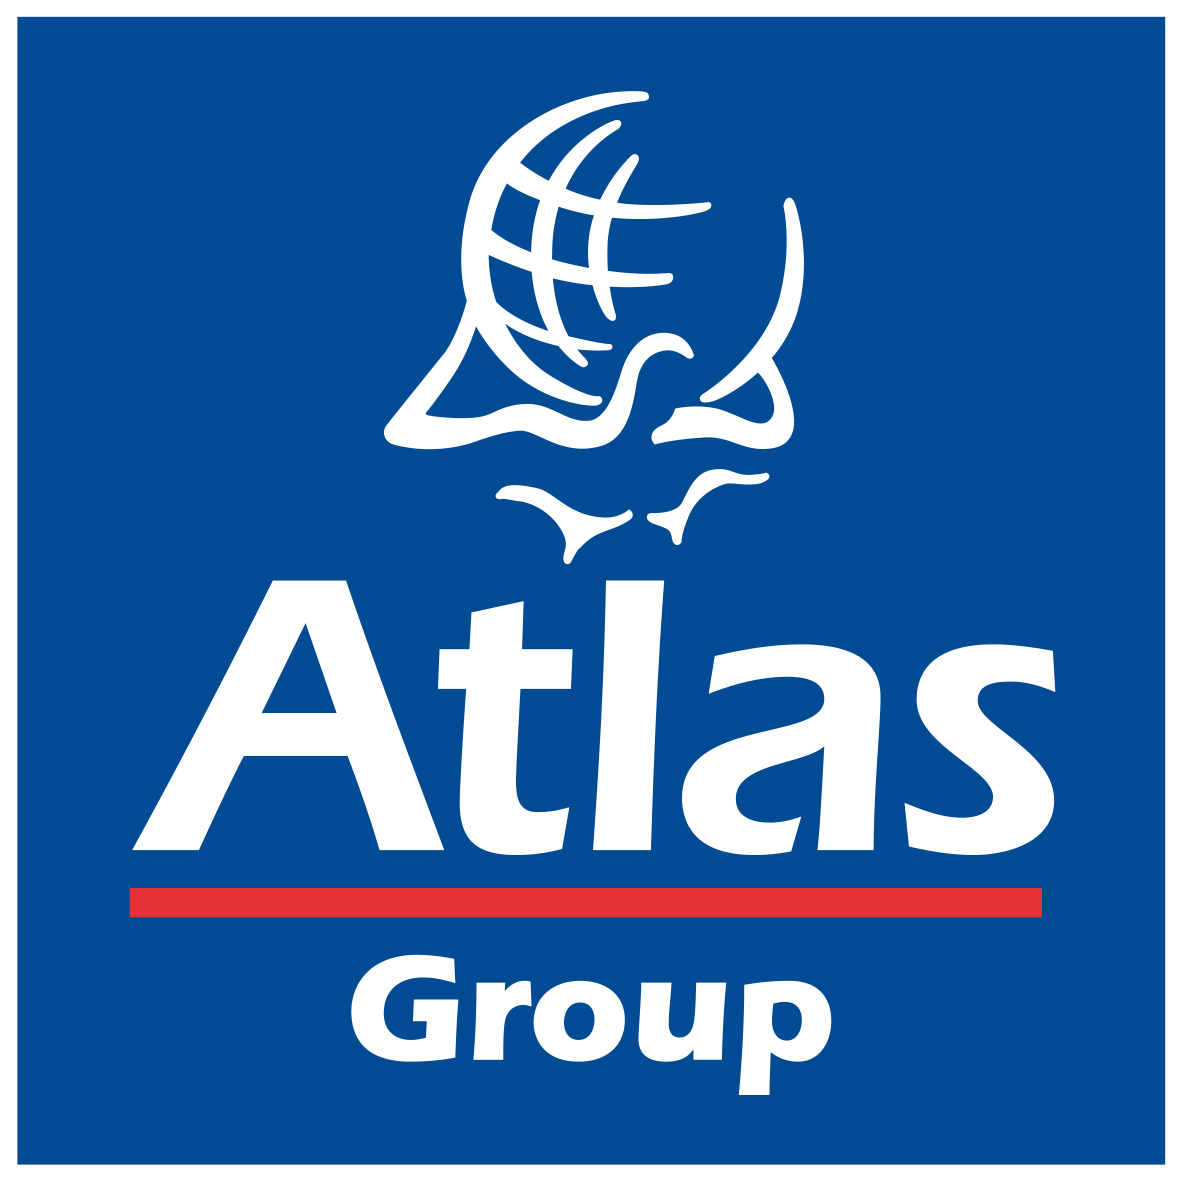 atlas travel insurance malta